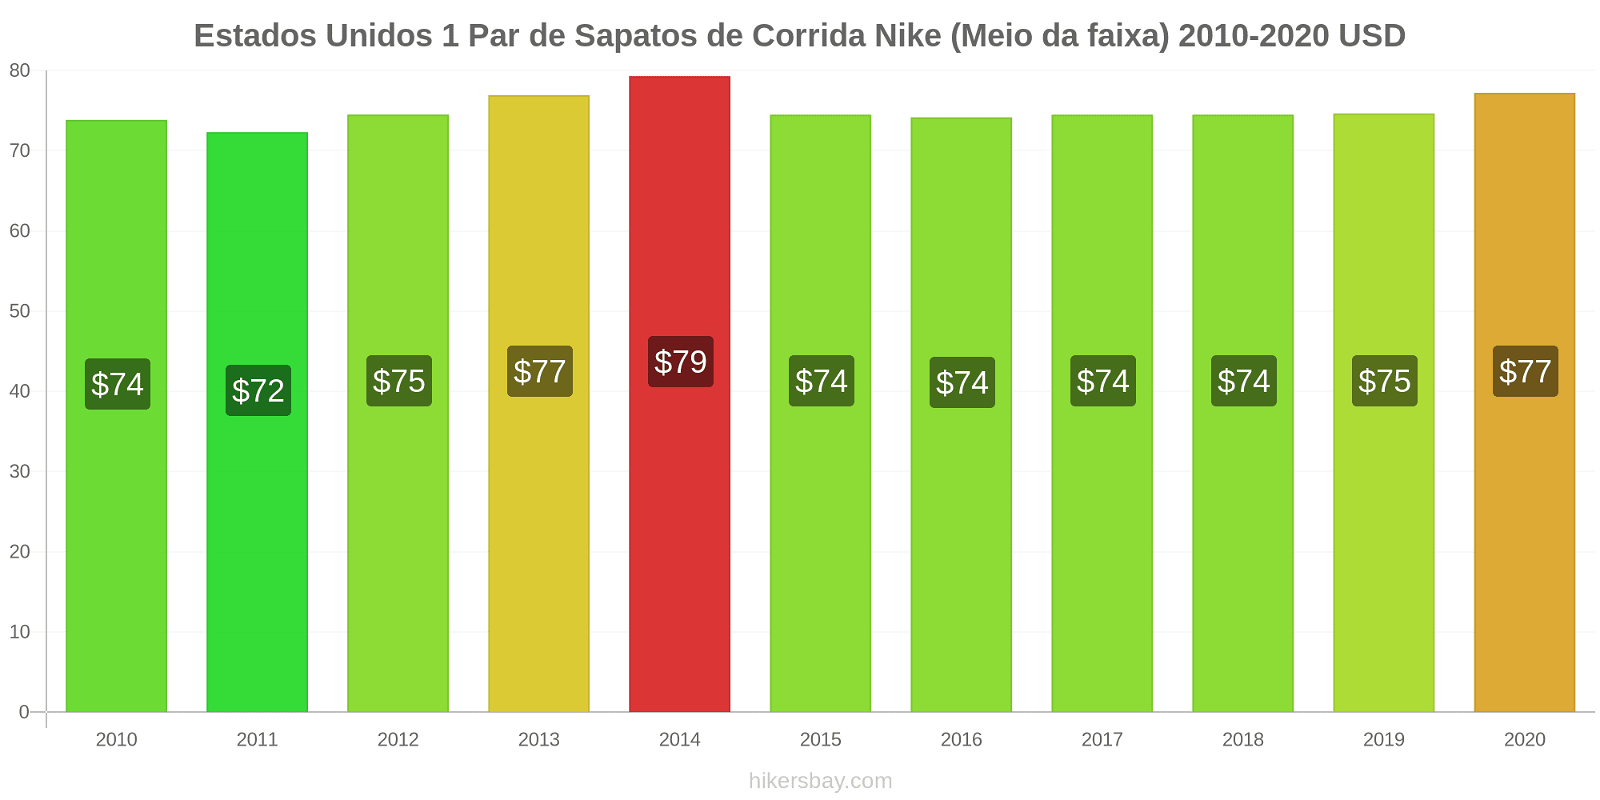 Estados Unidos variação de preço 1 par de tênis Nike (mid-range) hikersbay.com